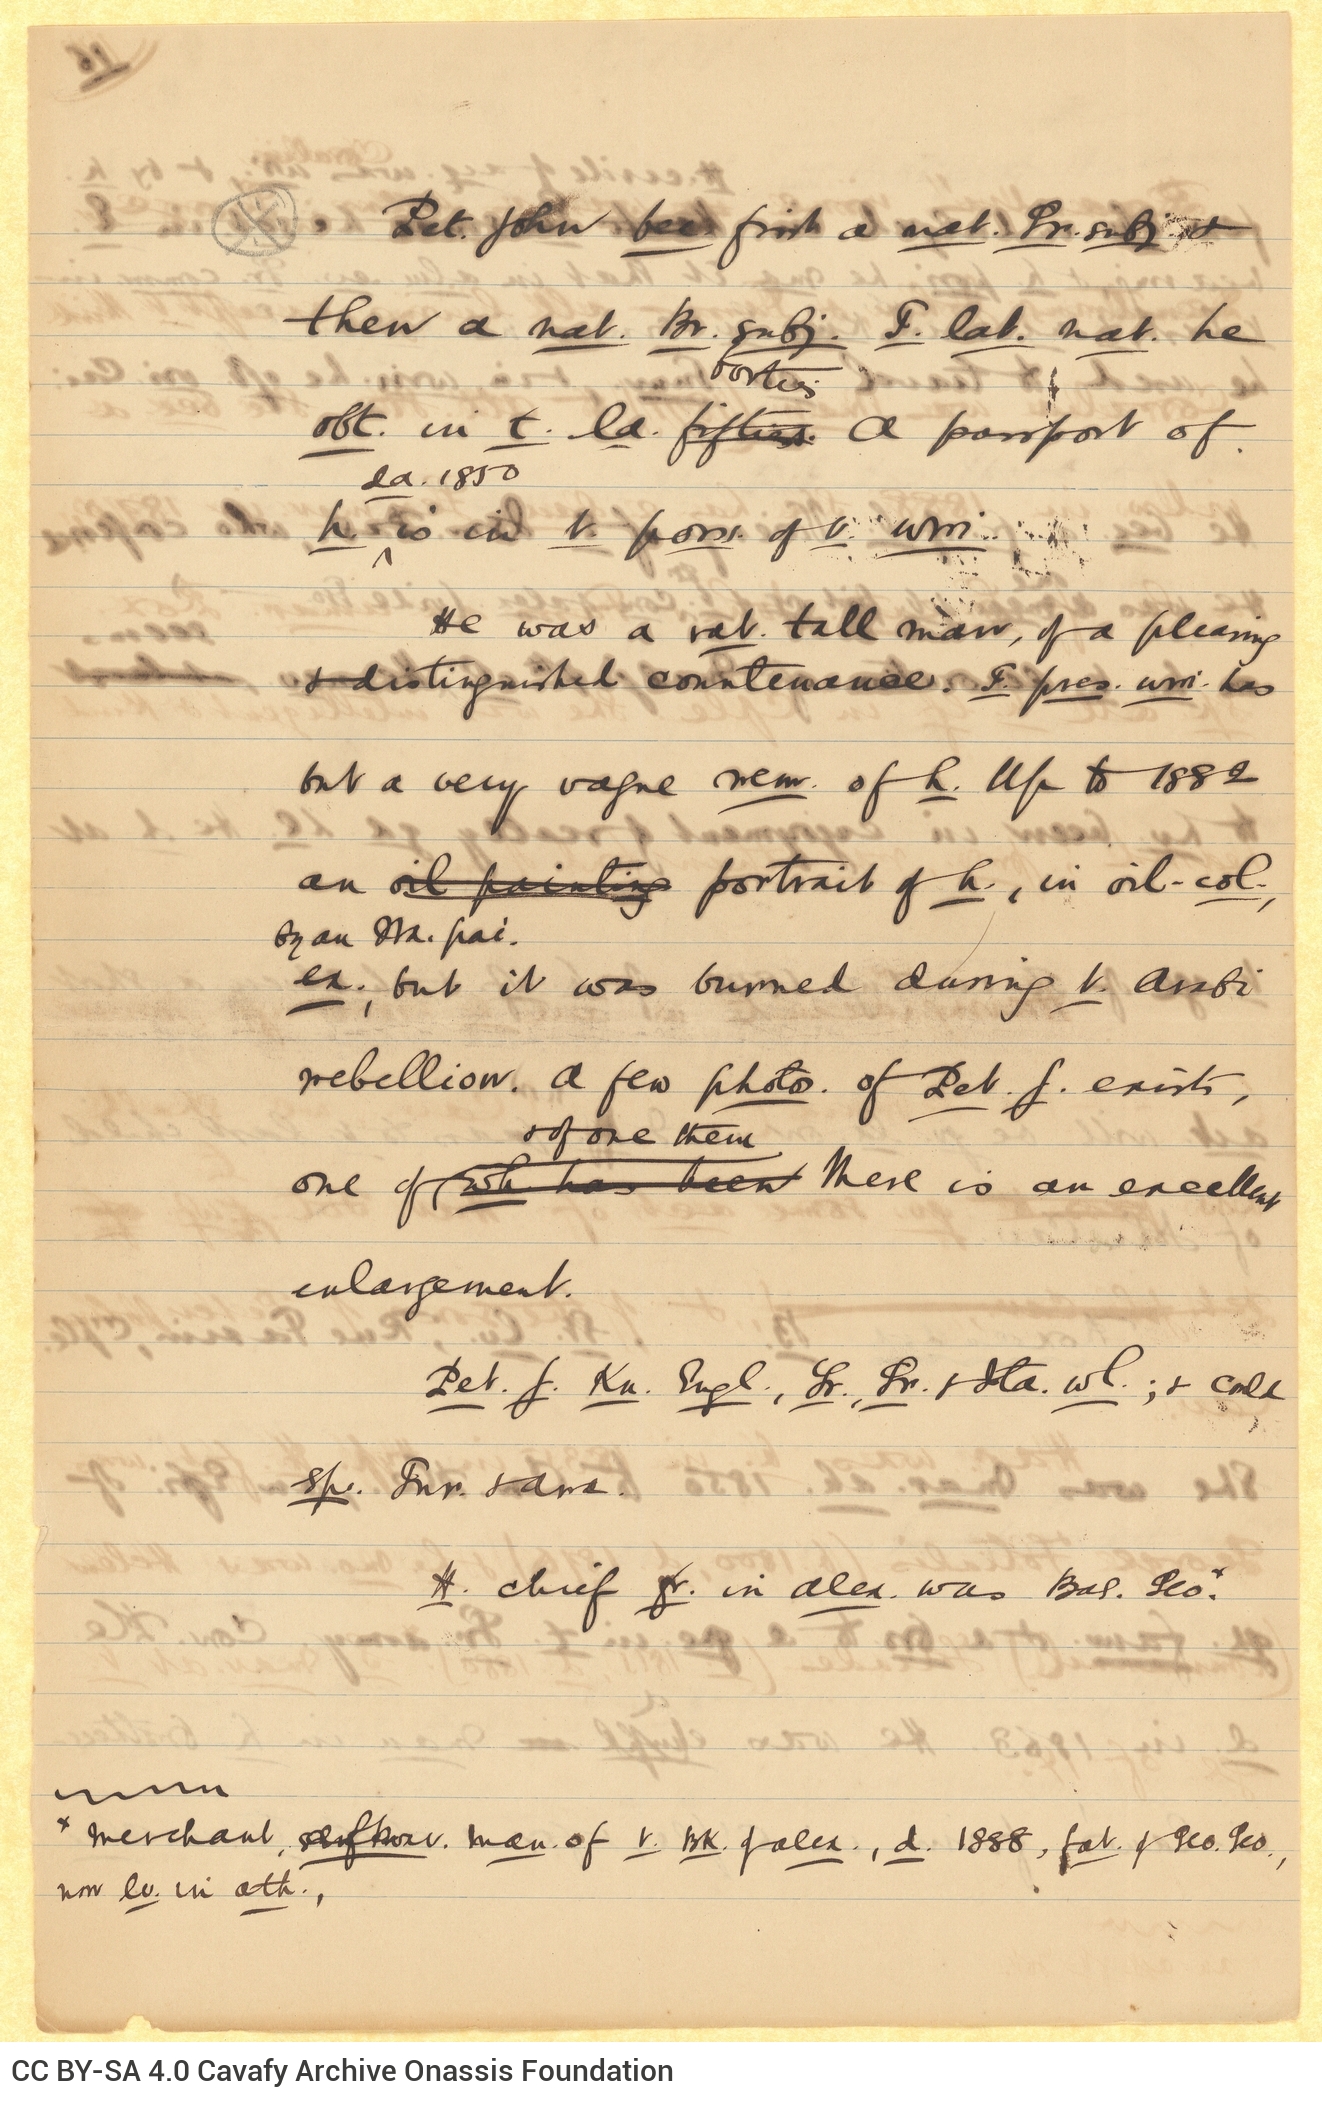 Χειρόγραφο πεζό κείμενο του Καβάφη σε 14 φύλλα και 9 τετρασέλιδα. Οι 